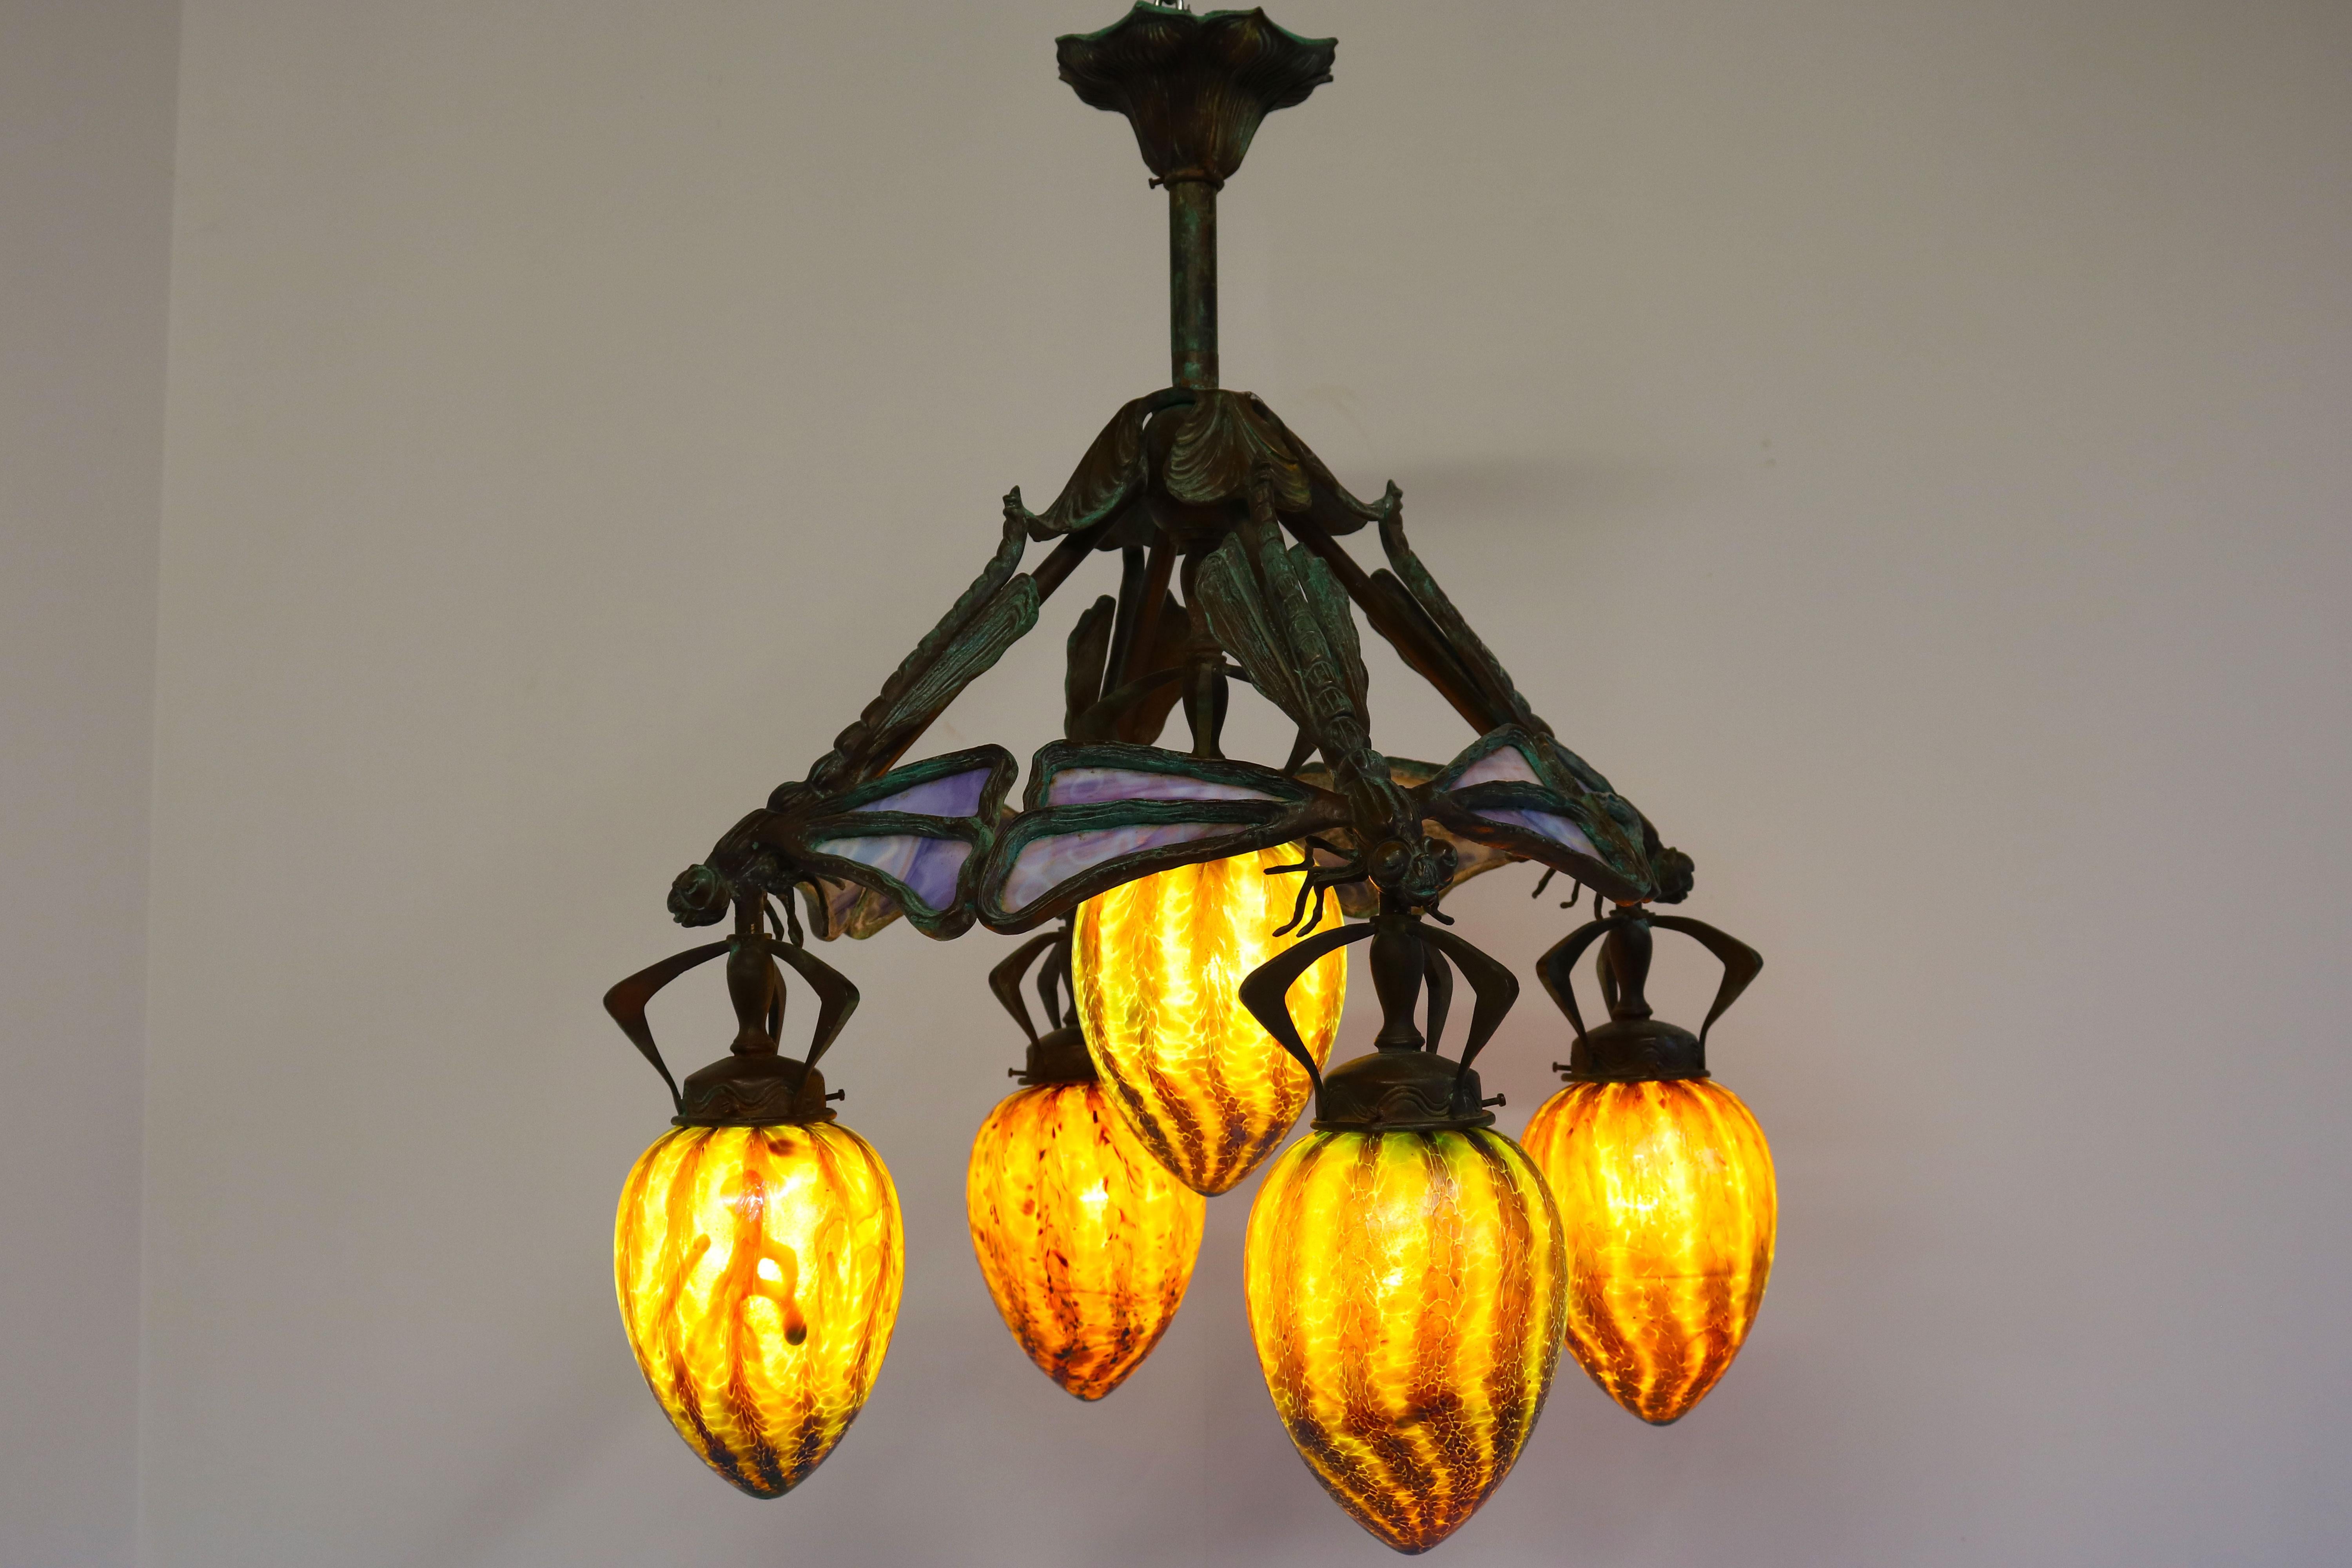 French Art Nouveau dragonfly chandelier 1900 Jugendstil Bronze Iridescent Glass 7